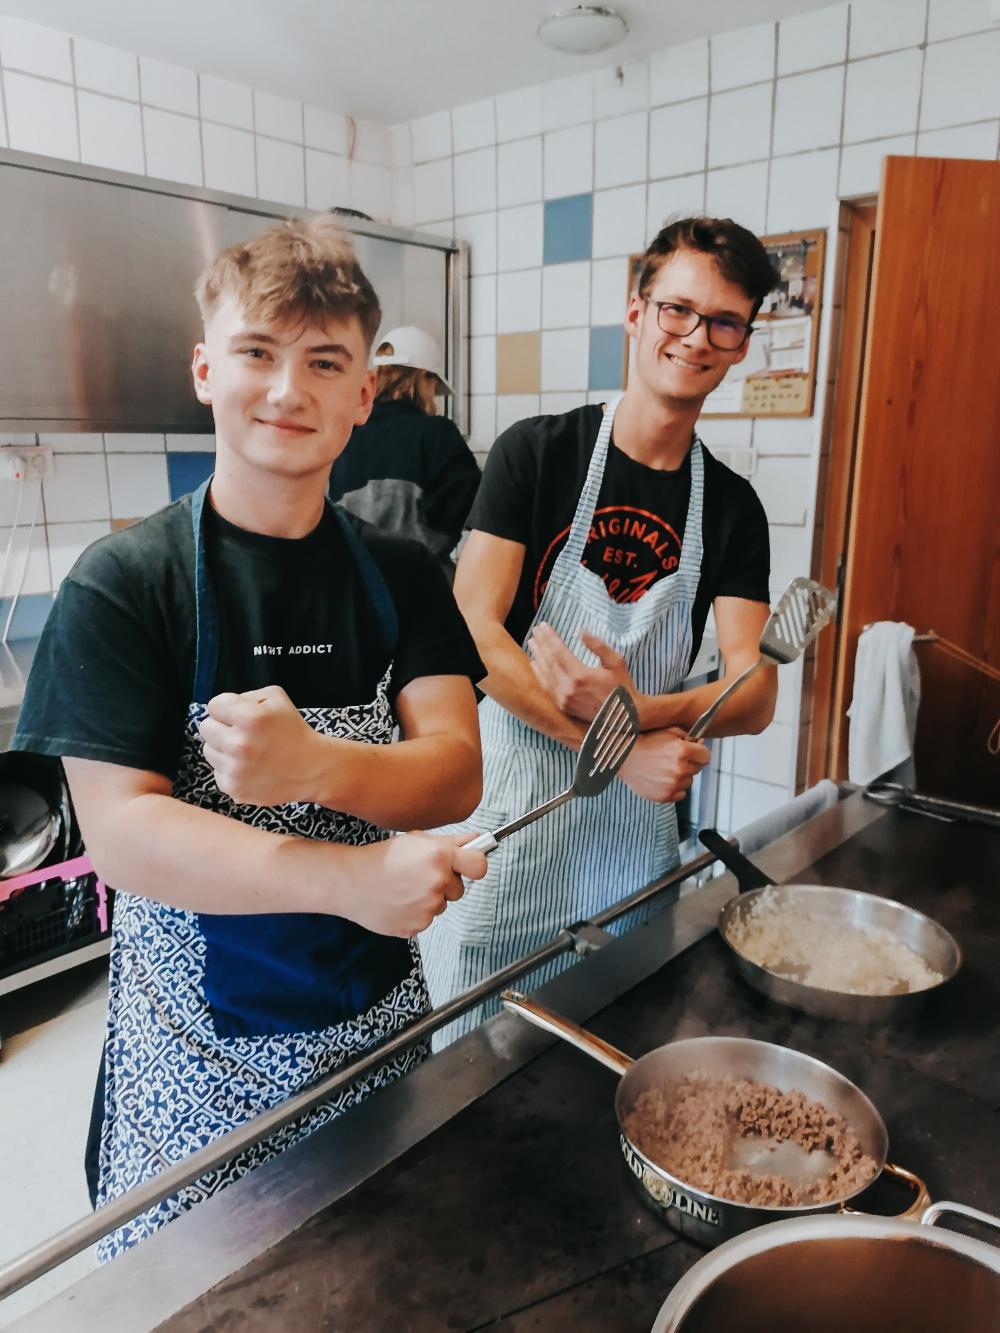 Zwei junge Männer mit Schürze, welche in einer Küche stehen und kochen.